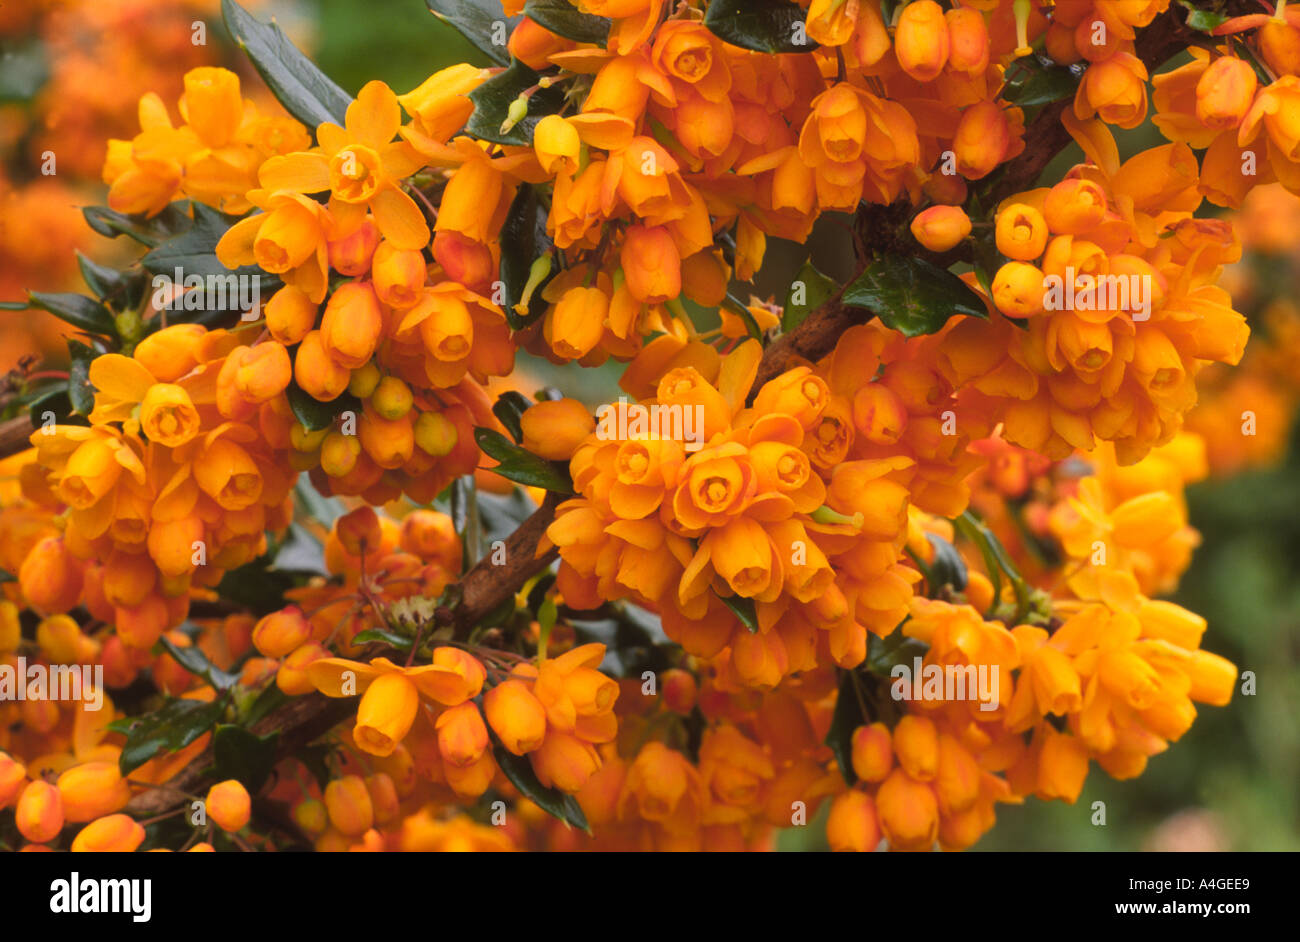 Berberis x lologensis 'Apricot Queen' orange flowers Spring garden Stock Photo